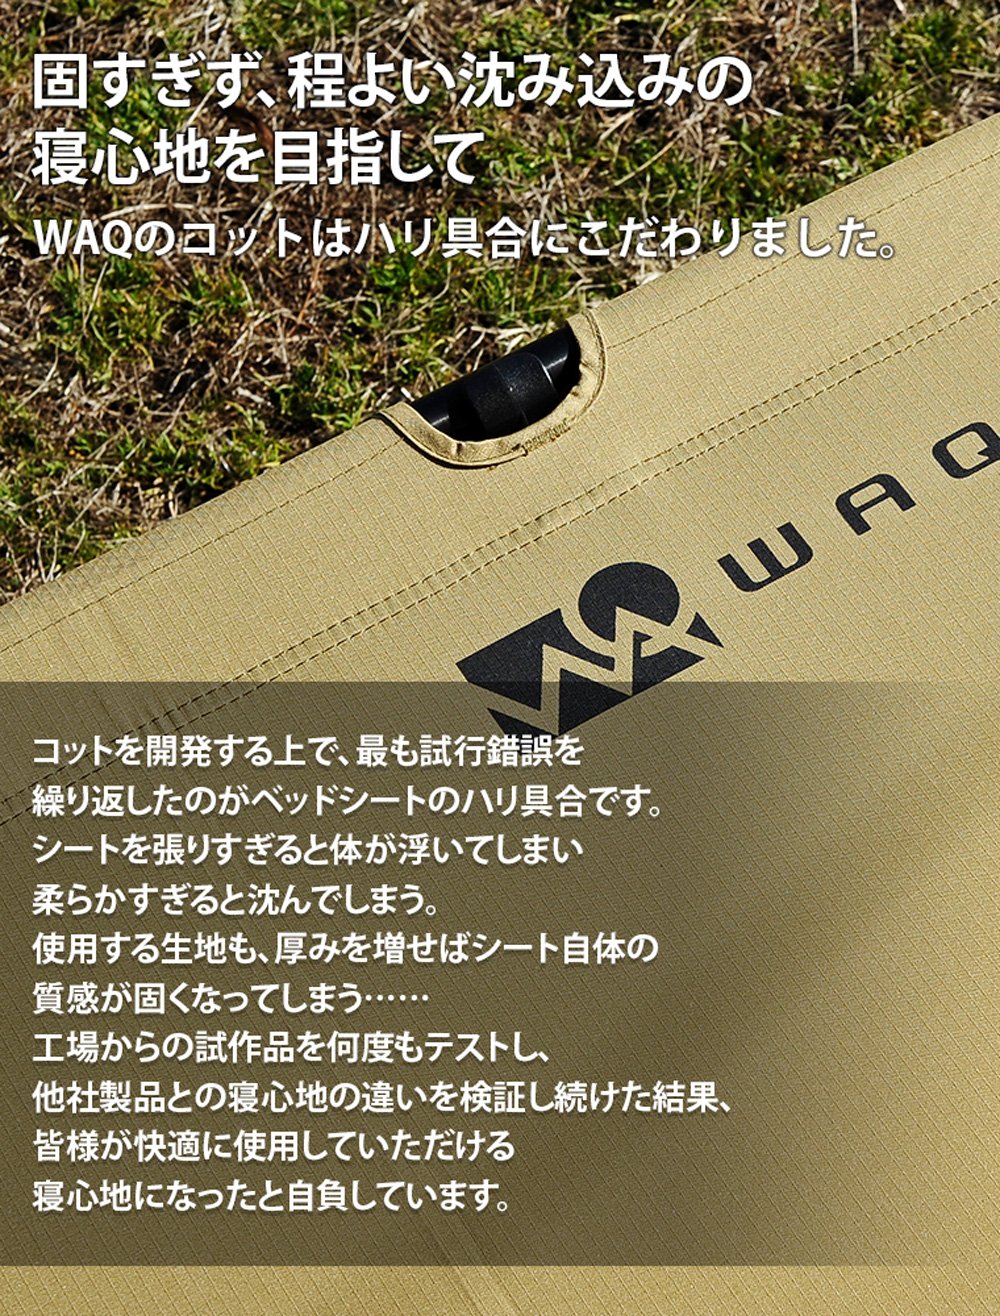 コット WAQ 2WAY フォールディングコット 【送料無料・1年保証 】